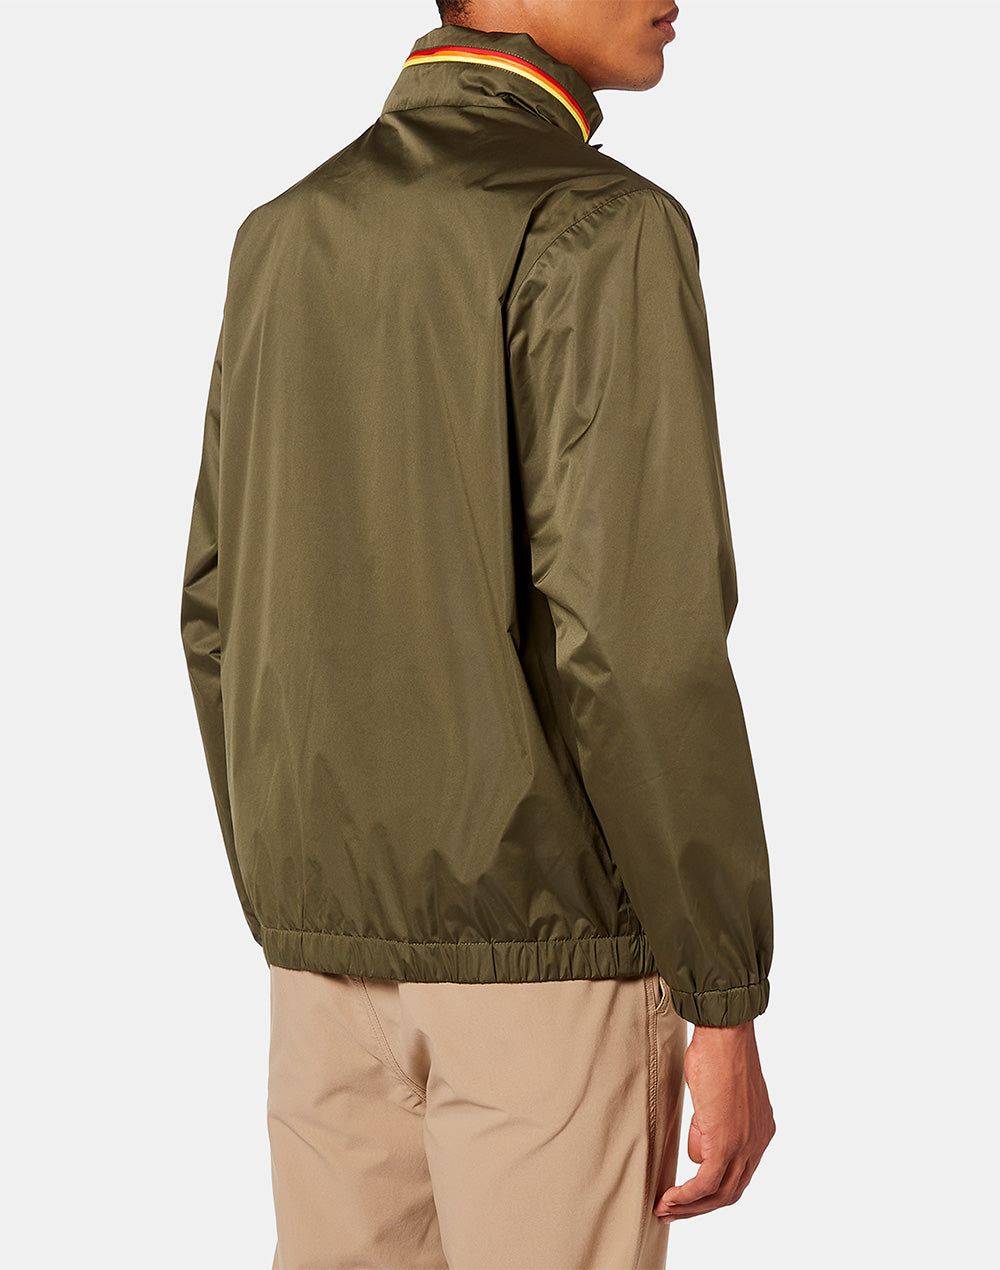 Sundek high neck padded jacket M884JKN4100-30201 – SUNDEK